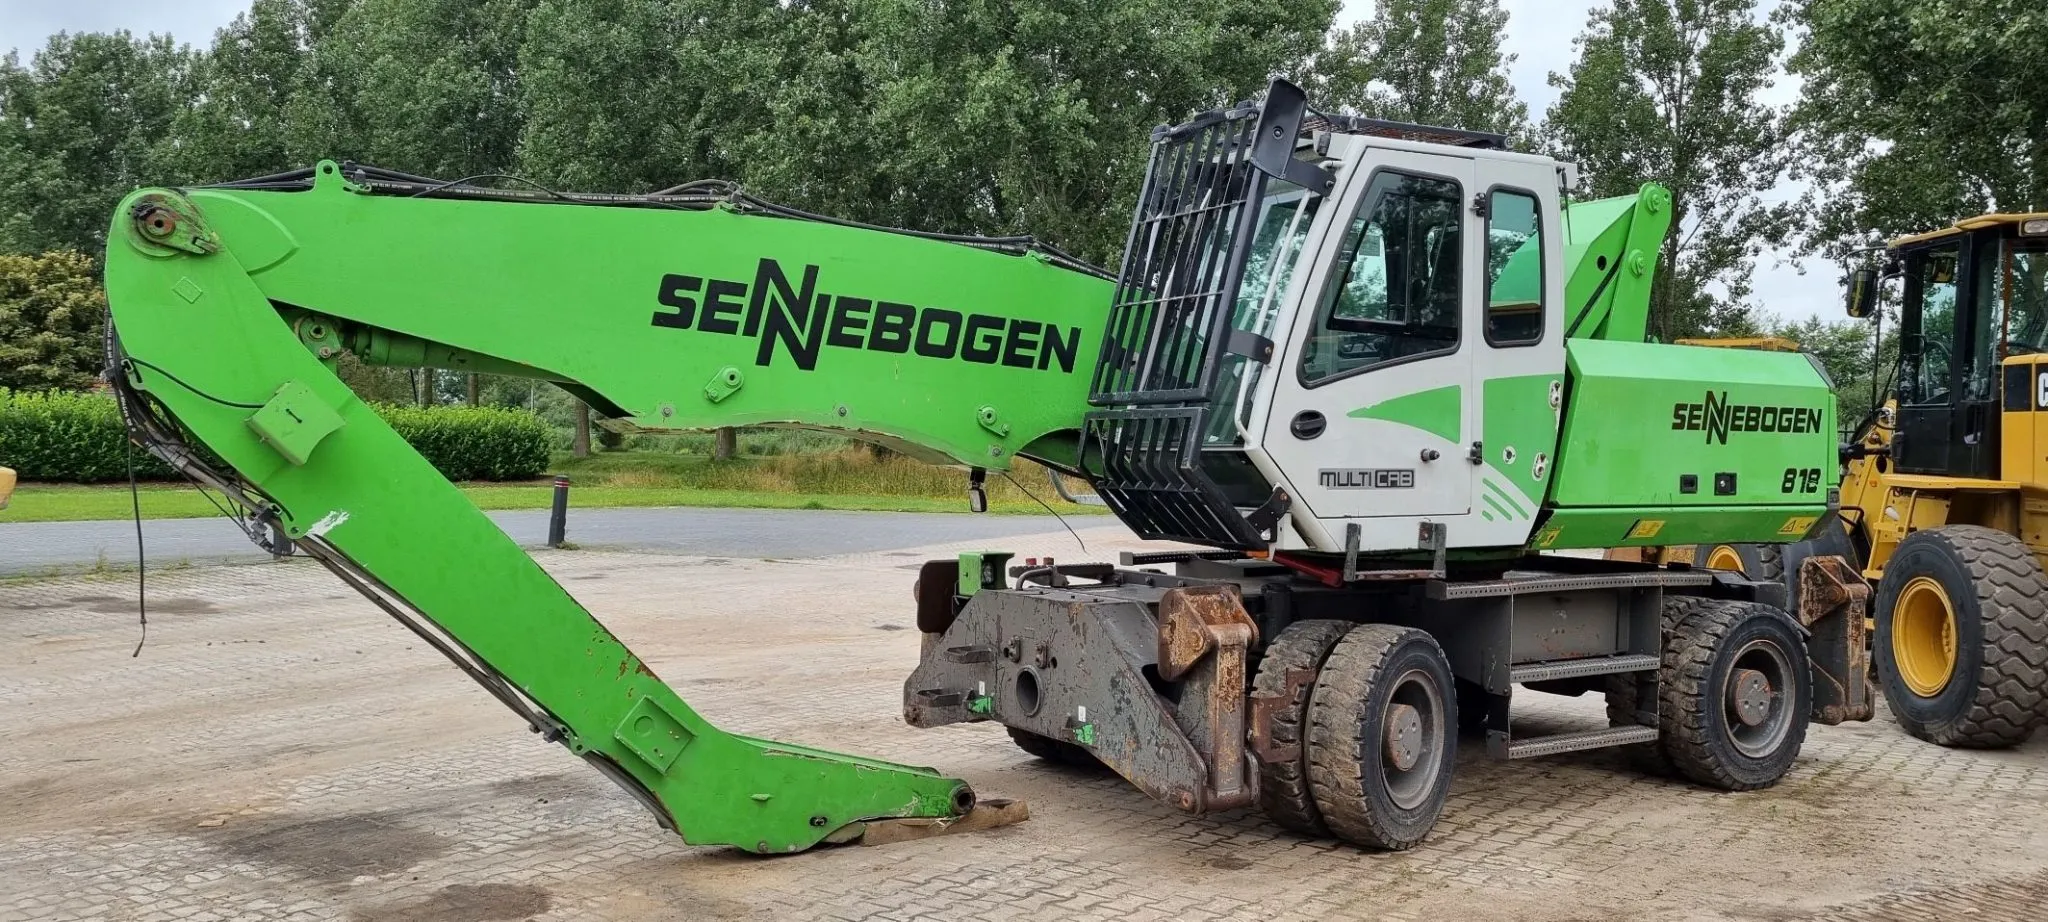 Sold, Sennebogen 818M material handler to Eastern Europe - 19